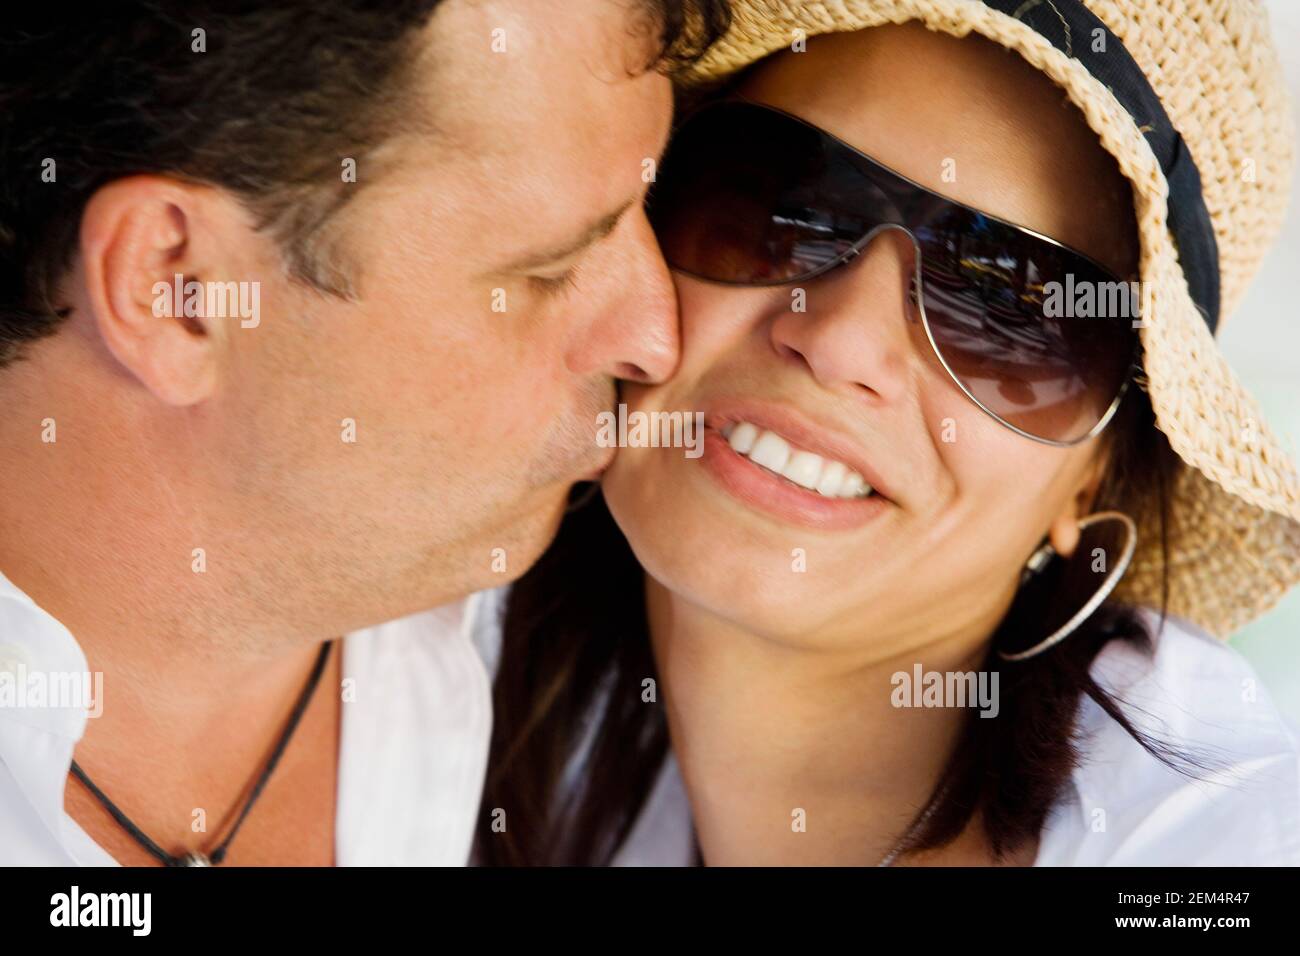 Gros plan d'un homme adulte de taille moyenne embrassant un adulte de taille moyenne femme sur la joue Banque D'Images